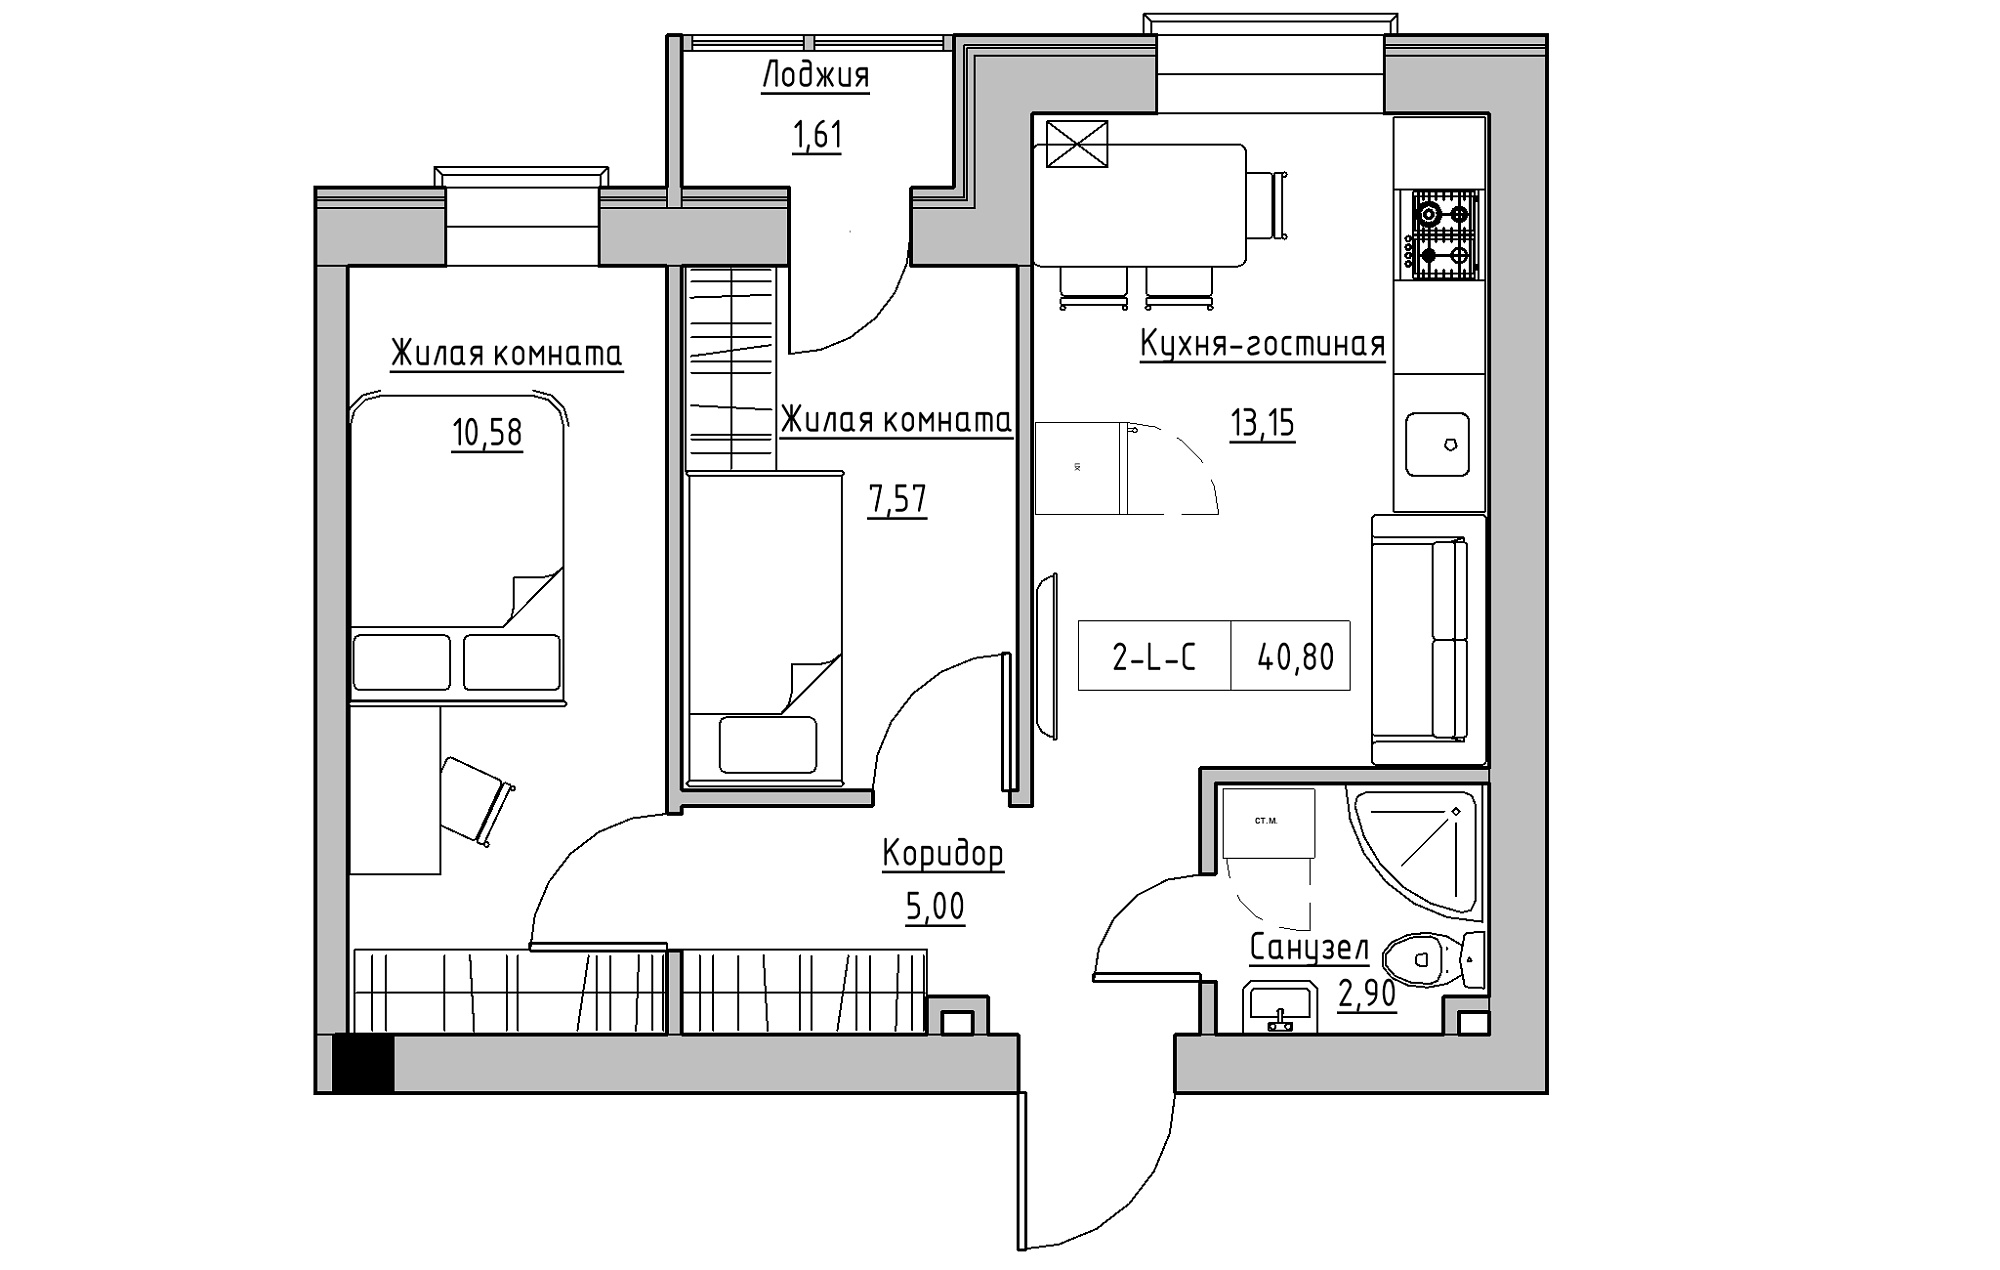 Планування 2-к квартира площею 40.8м2, KS-018-01/0005.